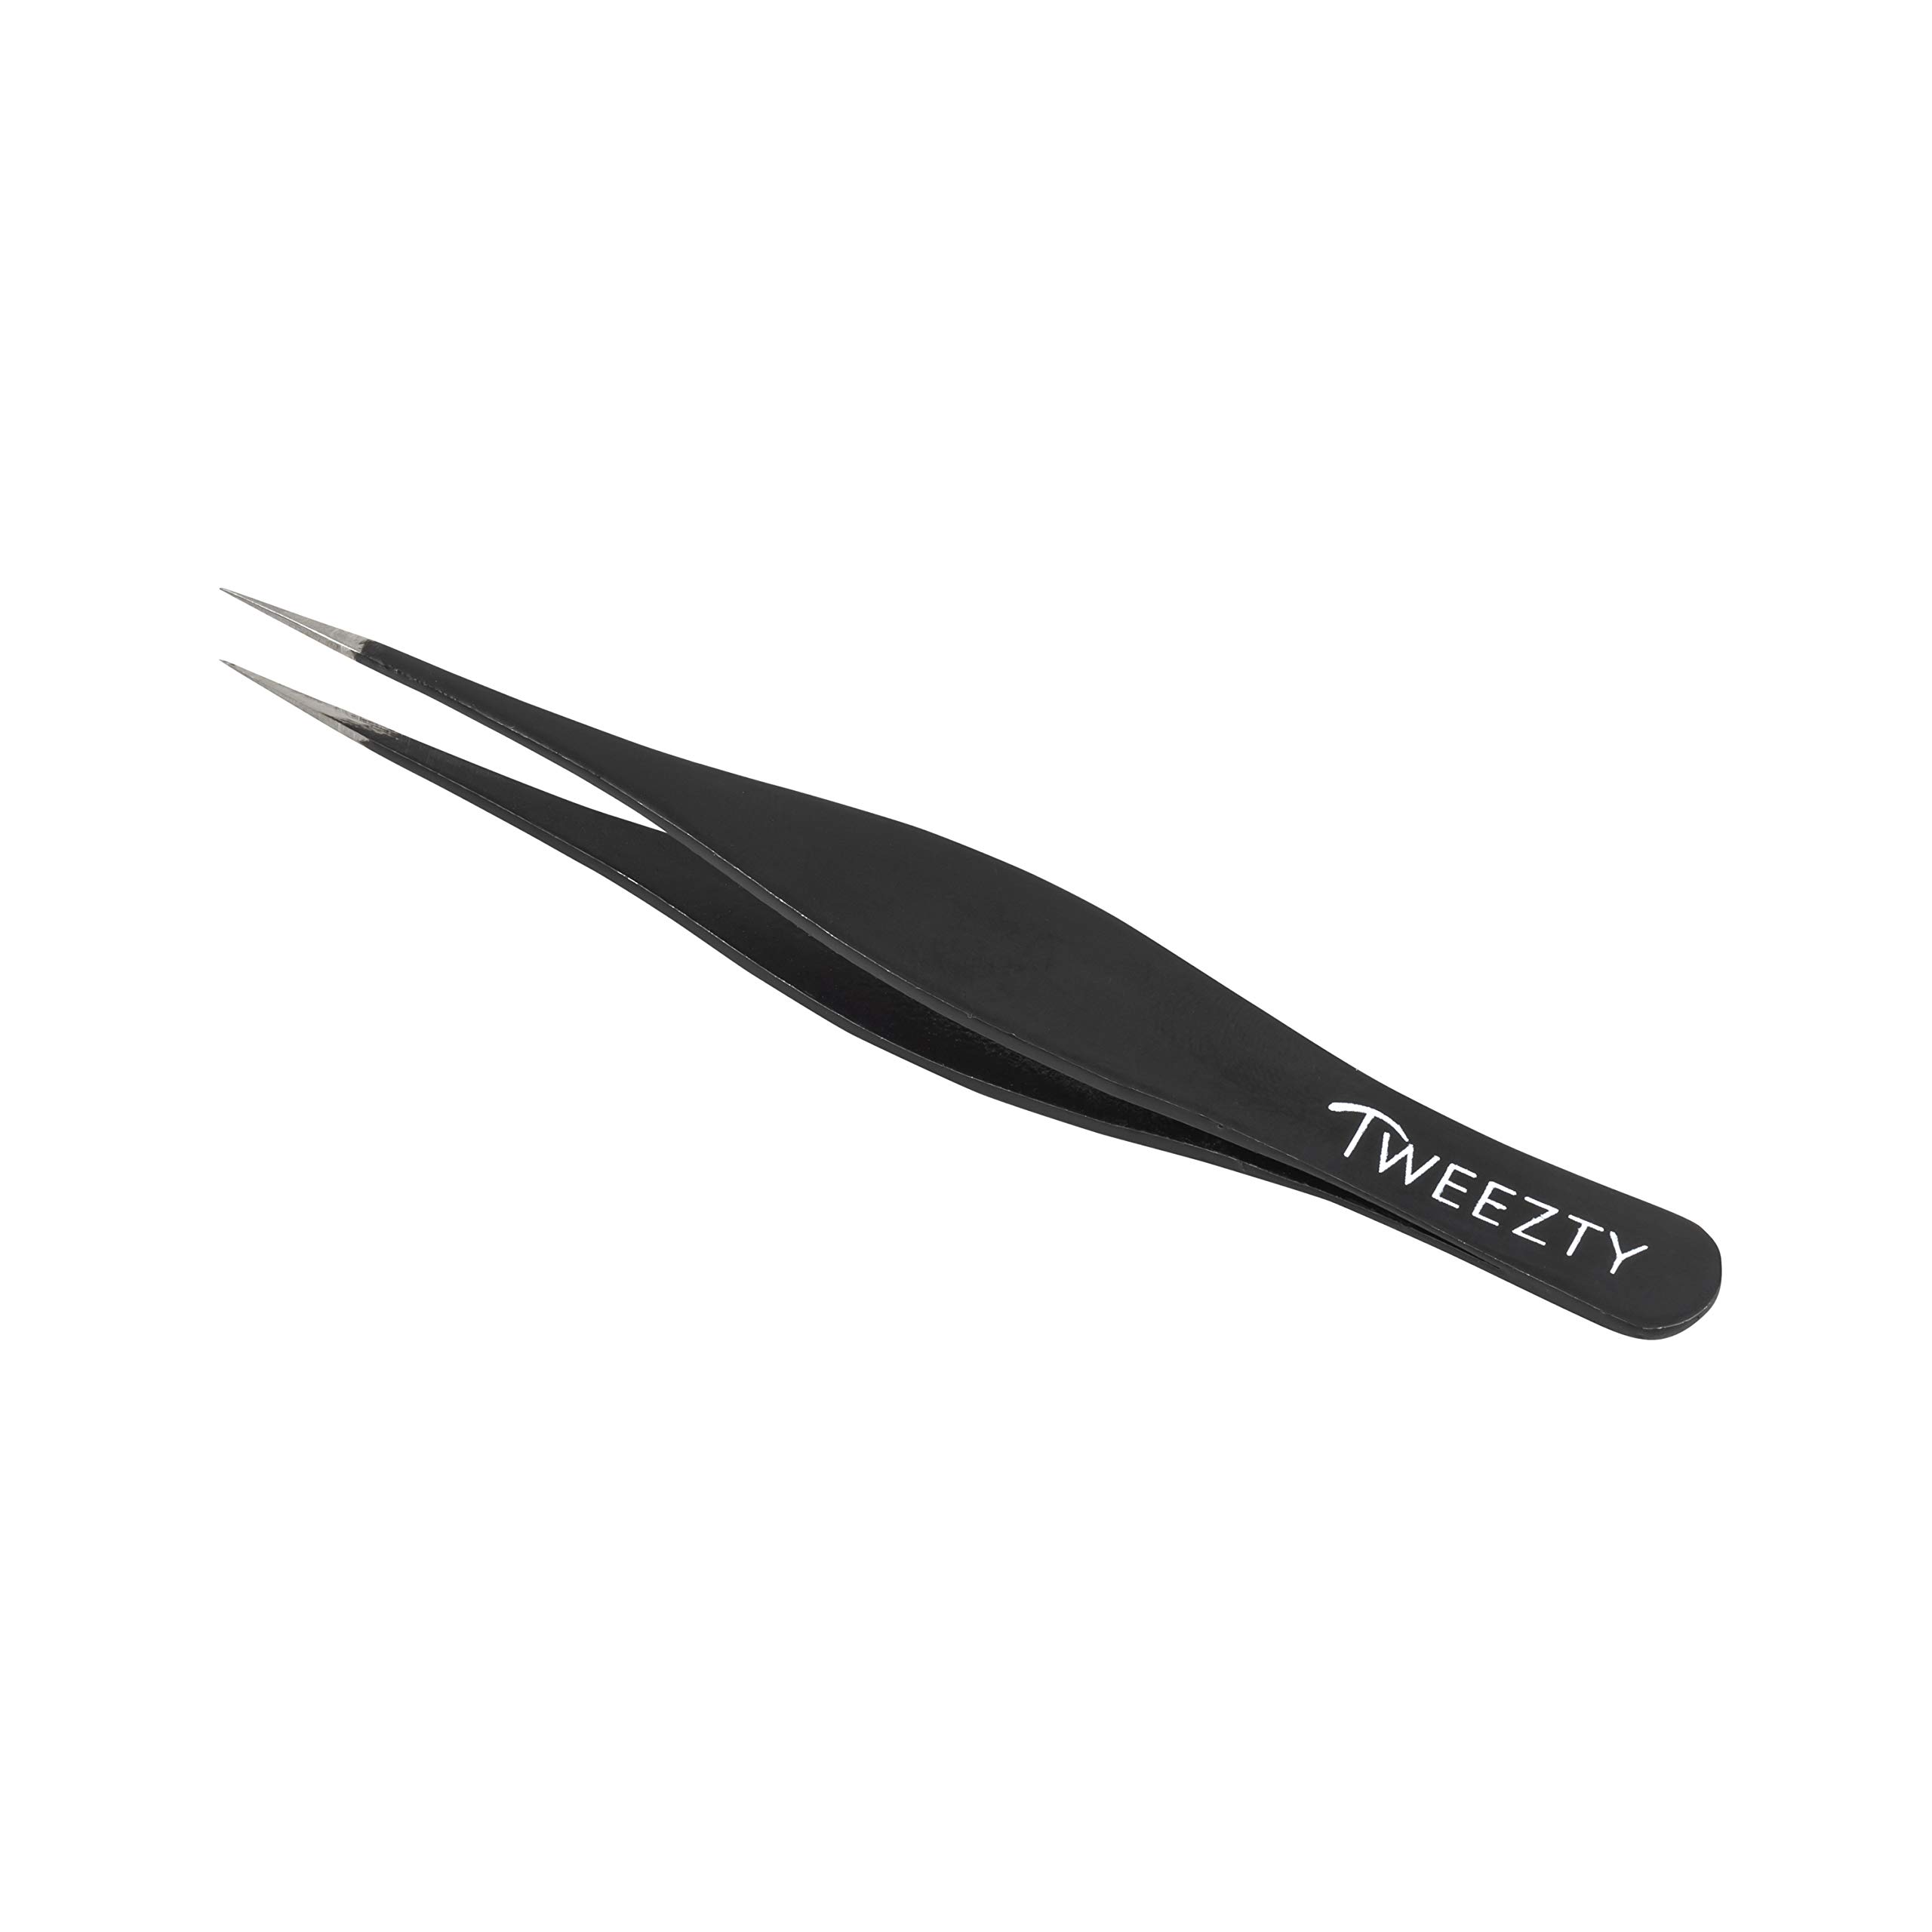 Tweezty Pointed Tweezers - Black Ingrown Hair Tweezers - Splinter Remover Needle  Nose Tweezers For Eyebrow Shaping and Fine Hair Removal - Professional  Grade Precision Tweezers